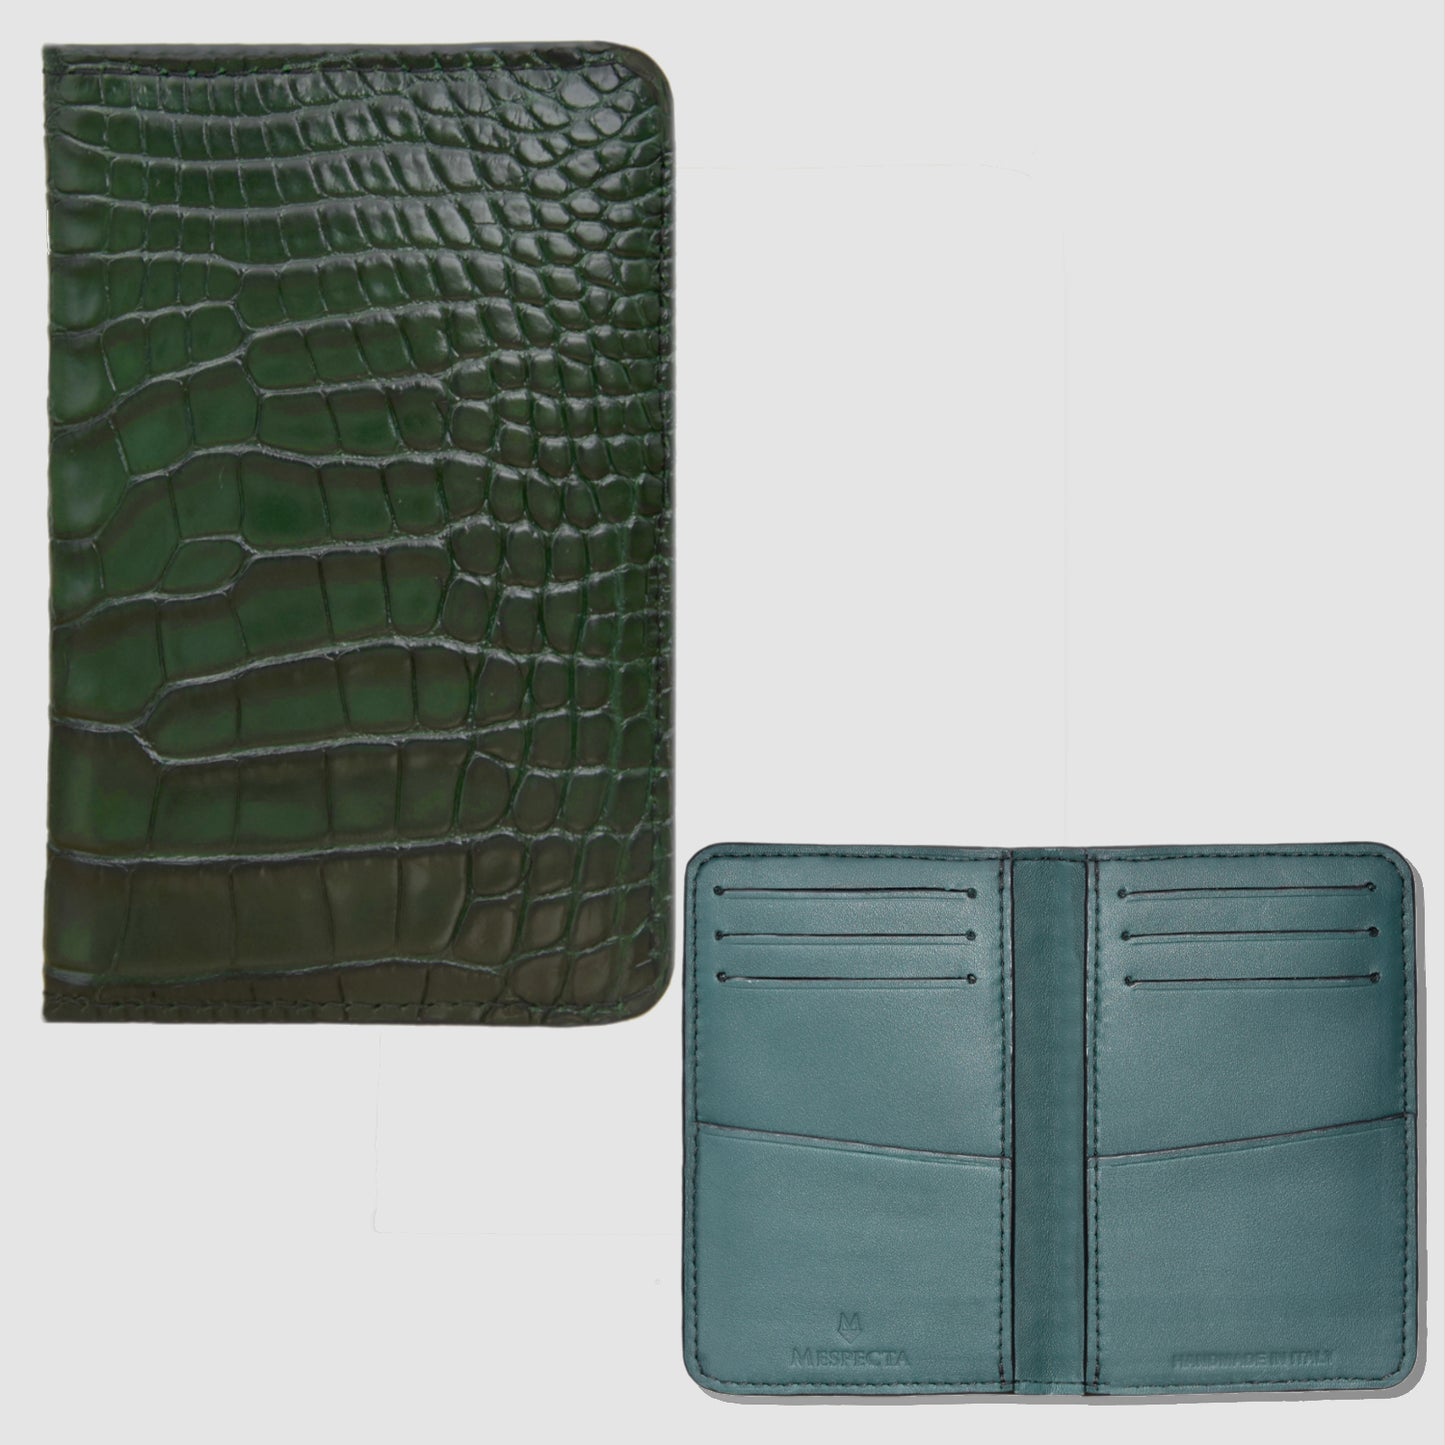 Card Holder Pocket Organizer in genuine Alligator skin - Dark Green